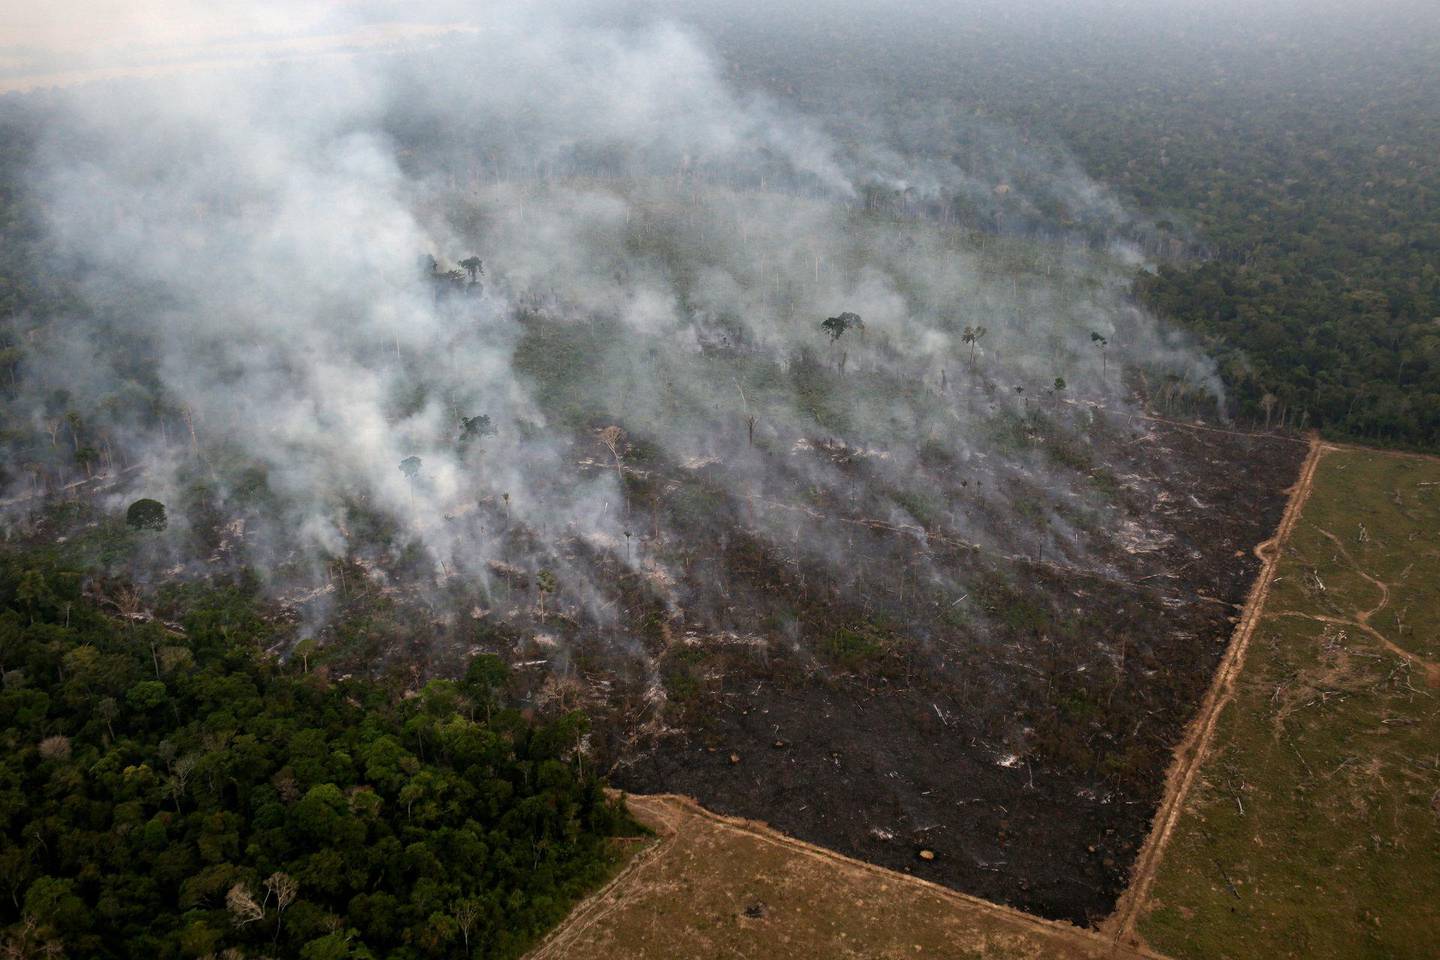 Det brenner ofte i Amazonasregnskogen, men så langt i år er det registrert flere branner enn tidligere. FOTO: NTB SCANPIX